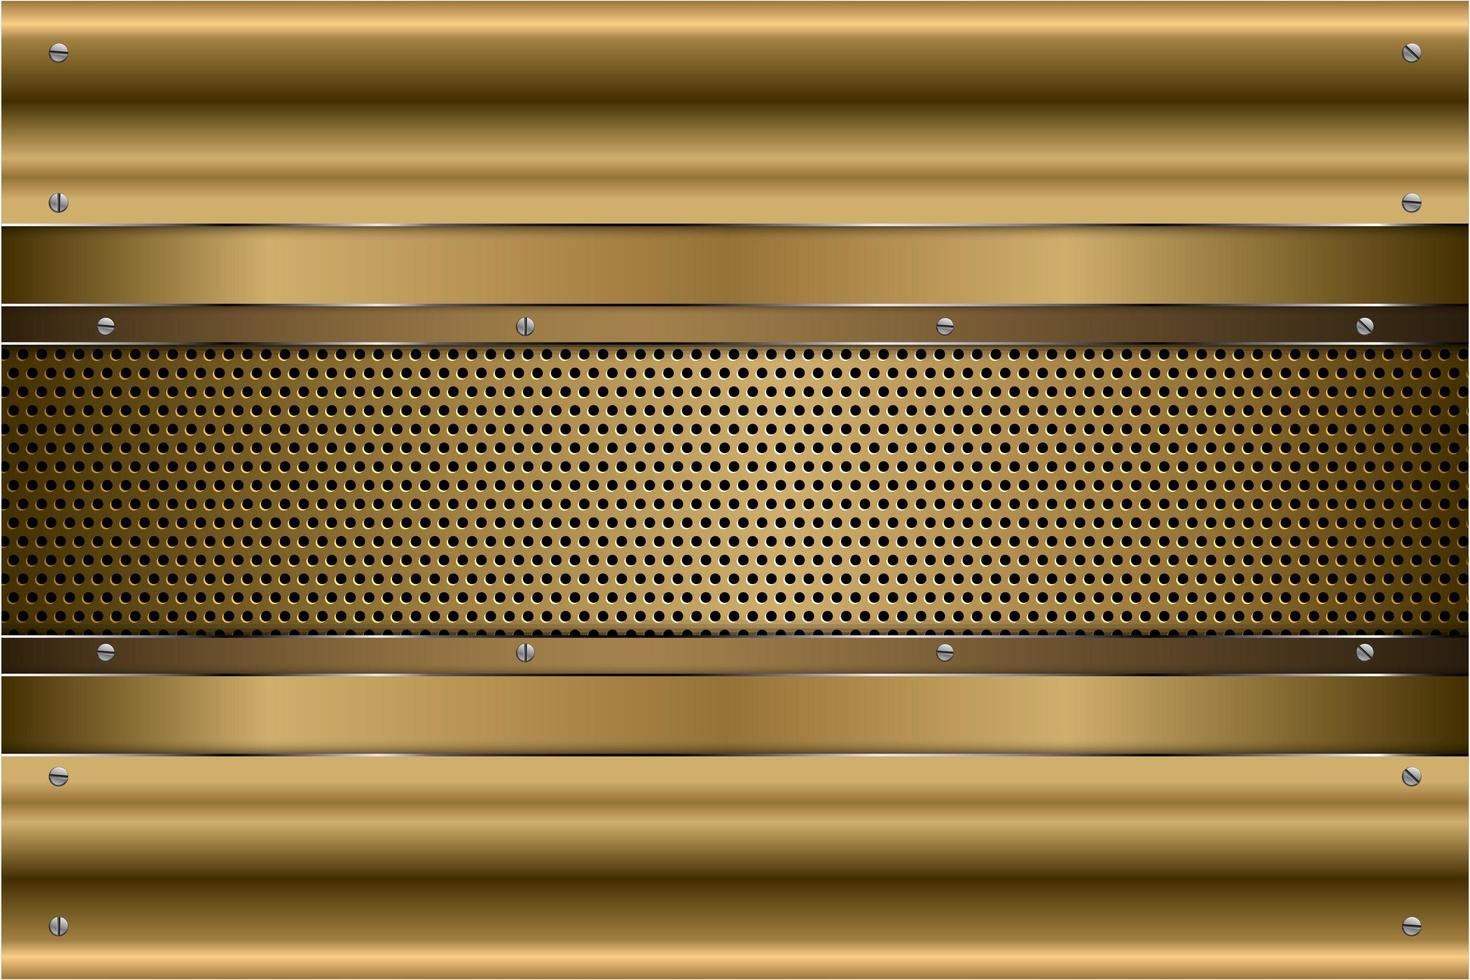 painéis de ouro metálico com parafusos em textura perfurada vetor